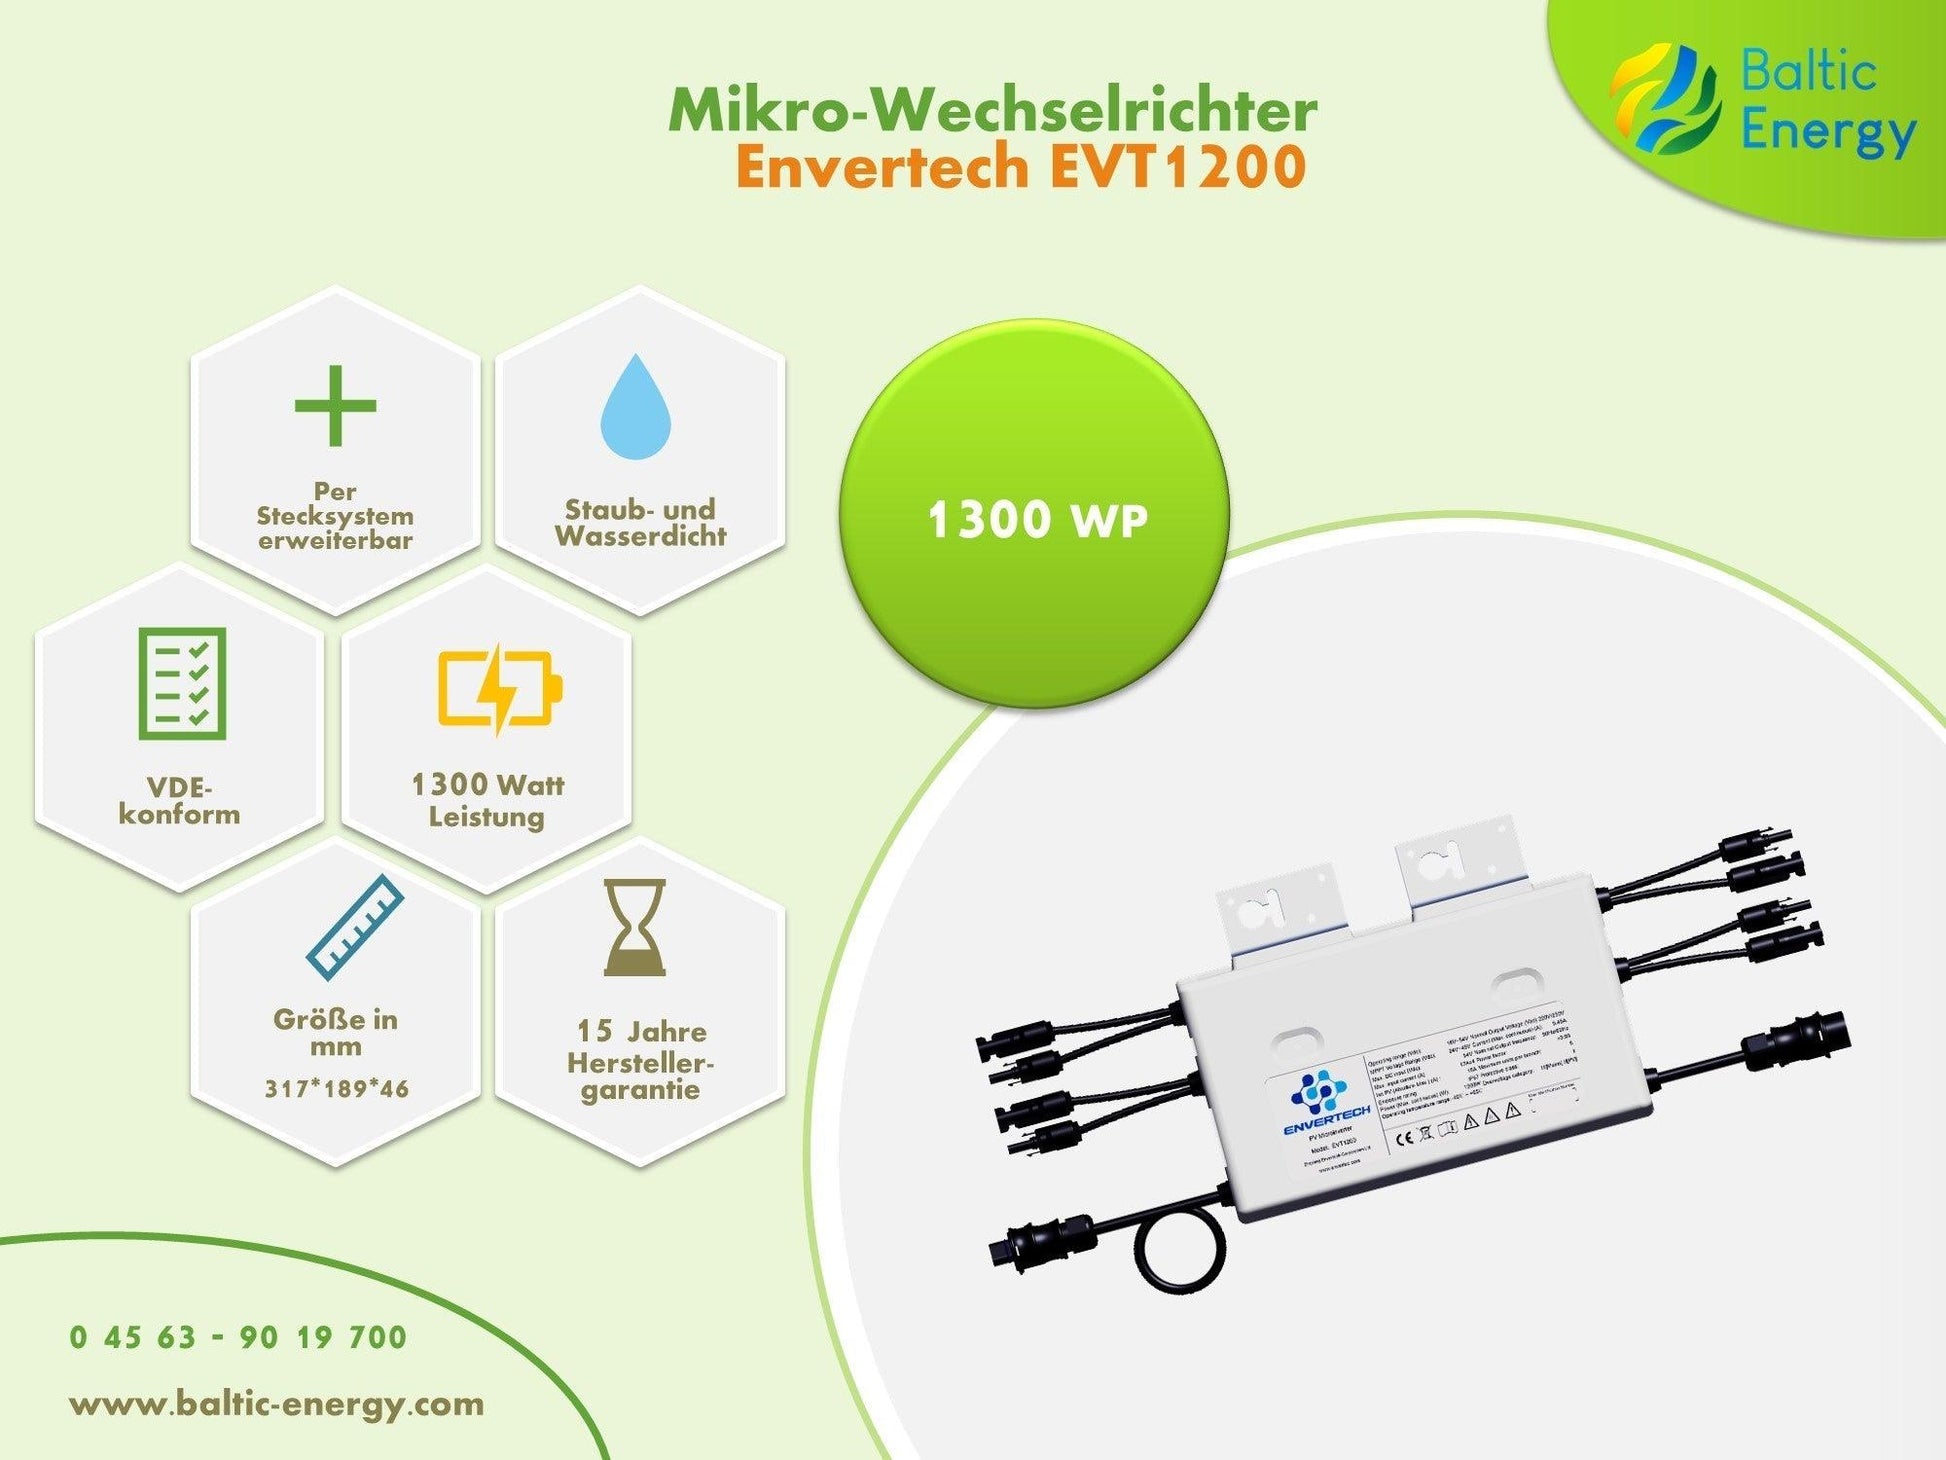 Envertech EVT560 600 W Micro-Wechselrichter für Solarmodule, Microinverter  Inverter für Mini-PV Plug & Play Balkonkraftwerk, Mikrowechselrichter